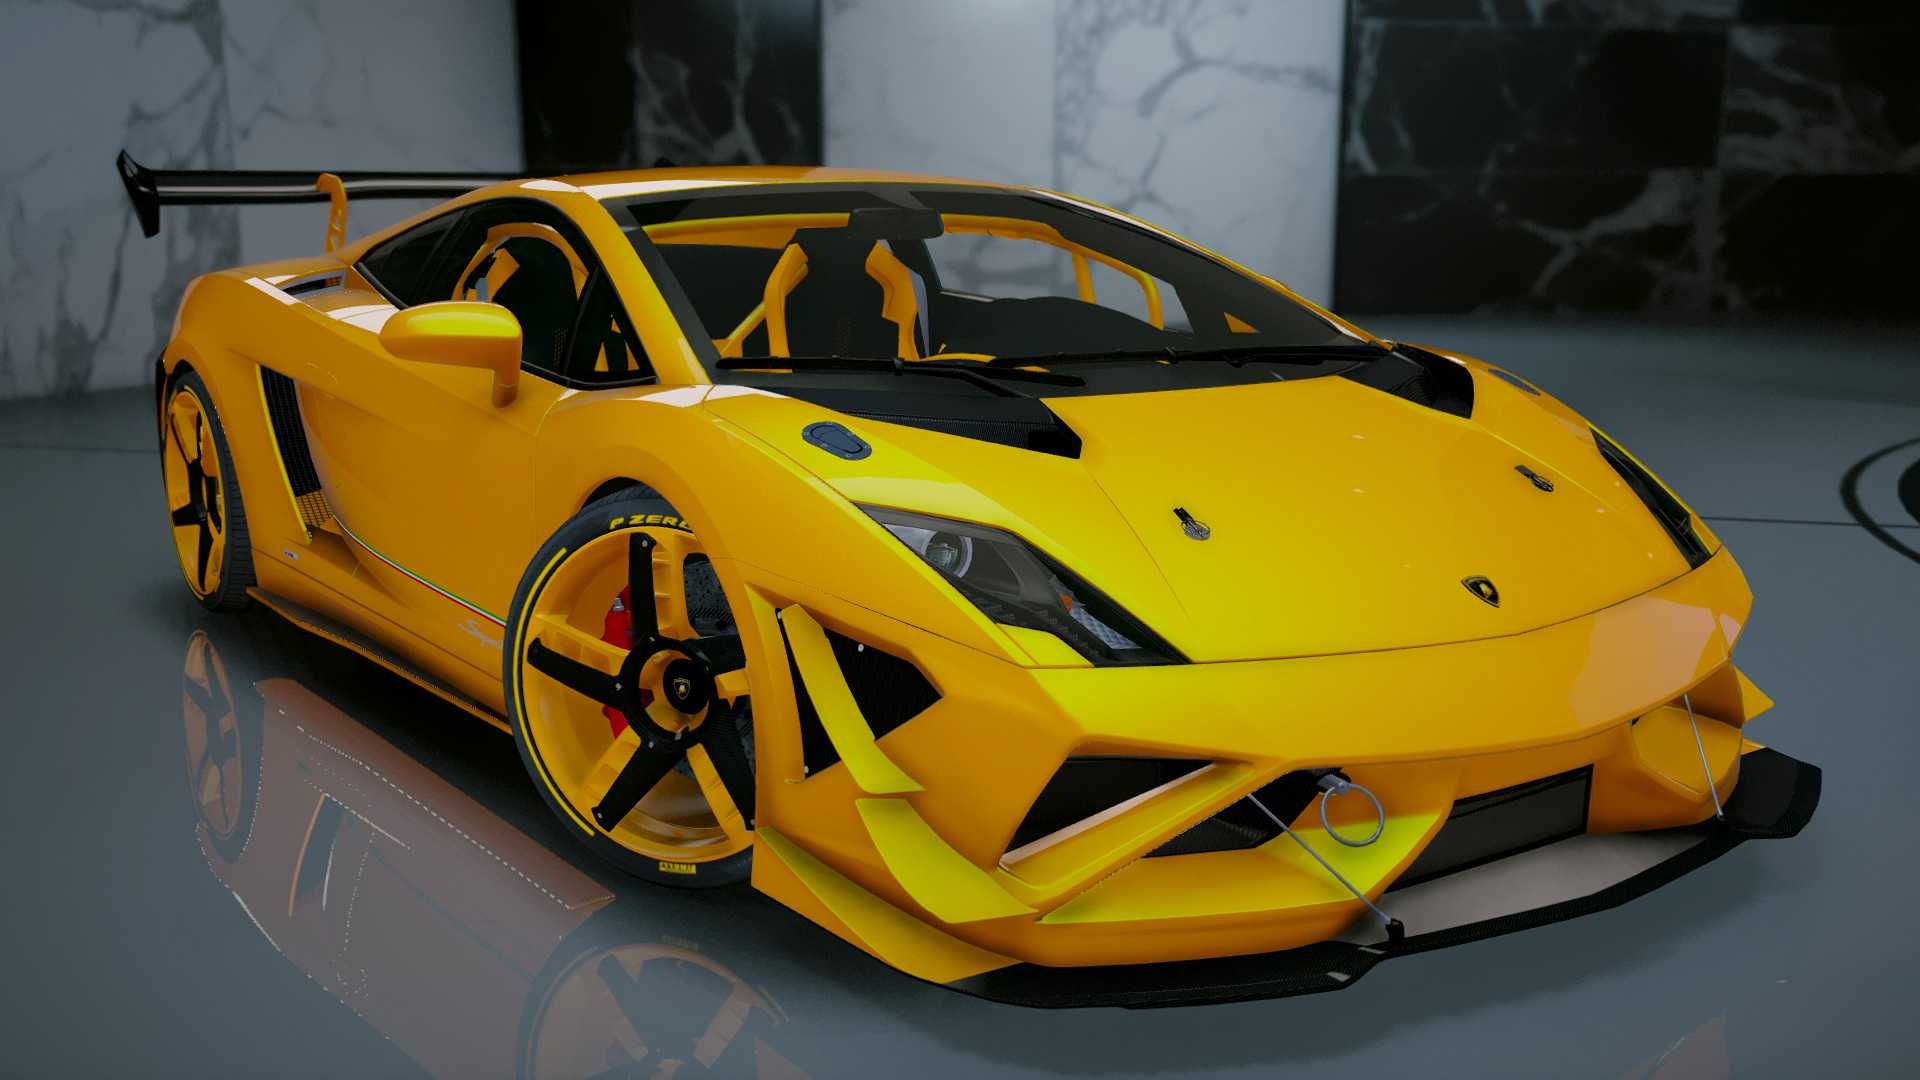 Lamborghini gallardo lp560-4 gold выпущен ограниченным тиражом в 10 экземпляров — разъясняем по порядку